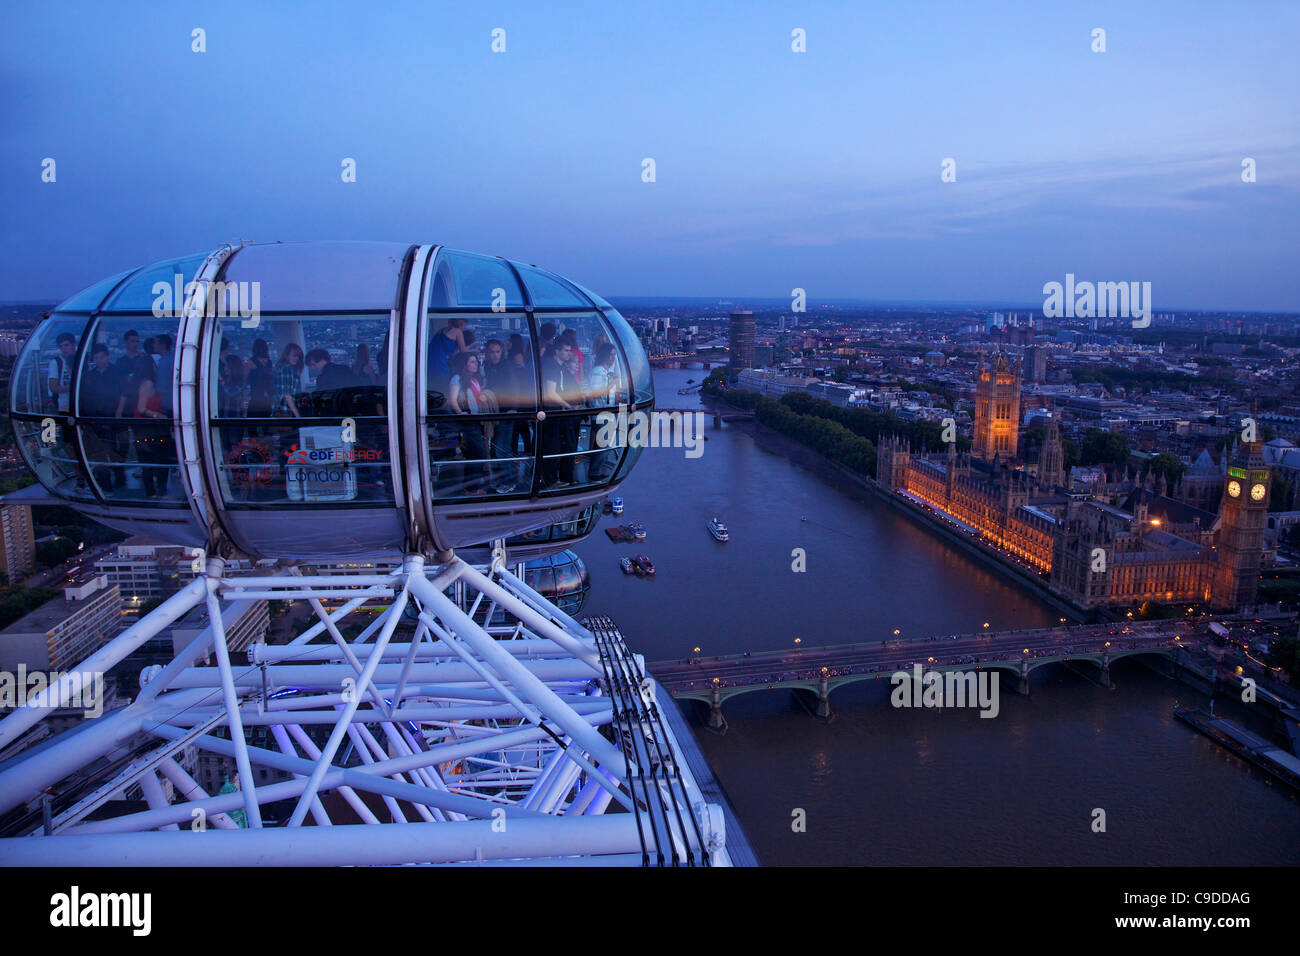 Avis de voyageurs de pod capsule, chambres du Parlement, Big Ben et la Tamise, le London Eye au crépuscule, Londres, Angleterre Banque D'Images